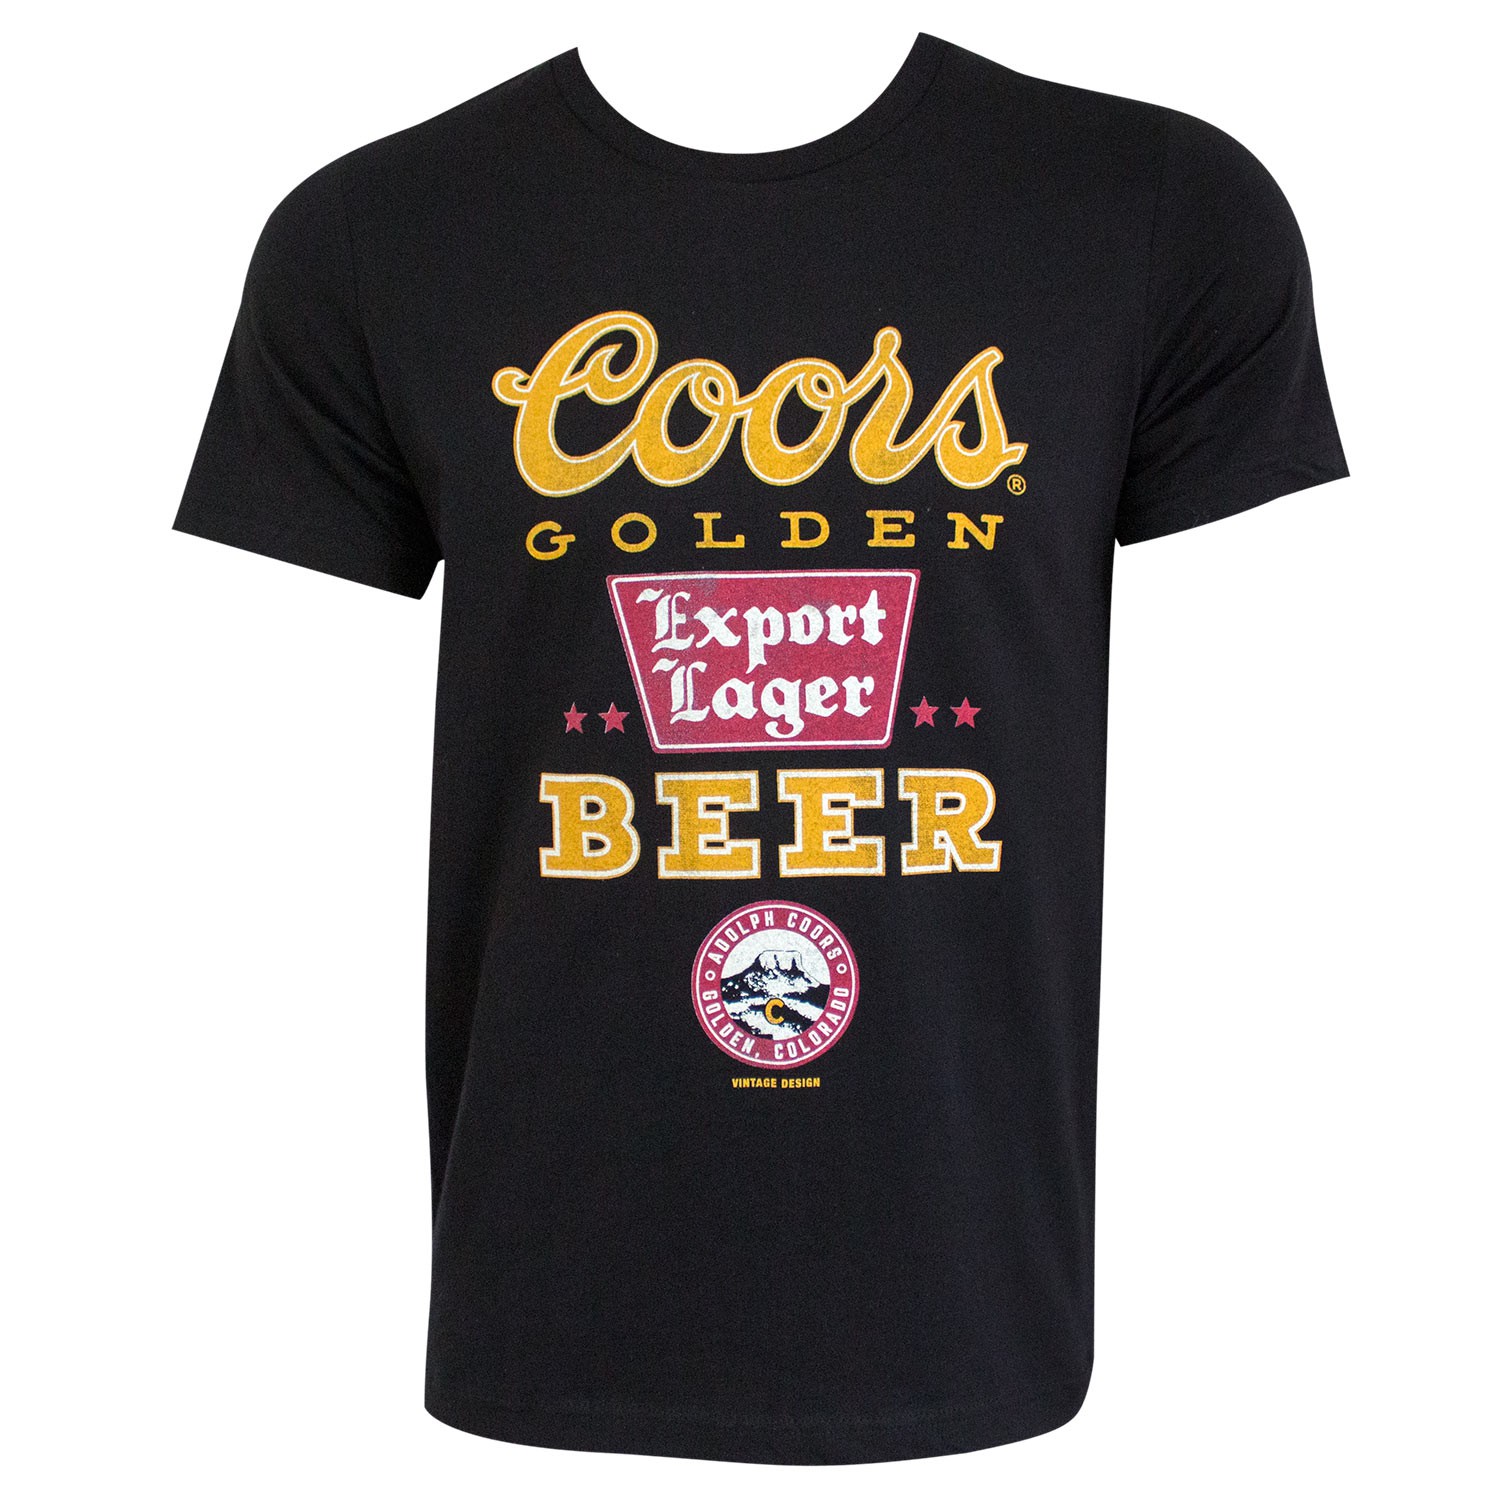 Coors Golden Beer Black Tee Shirt